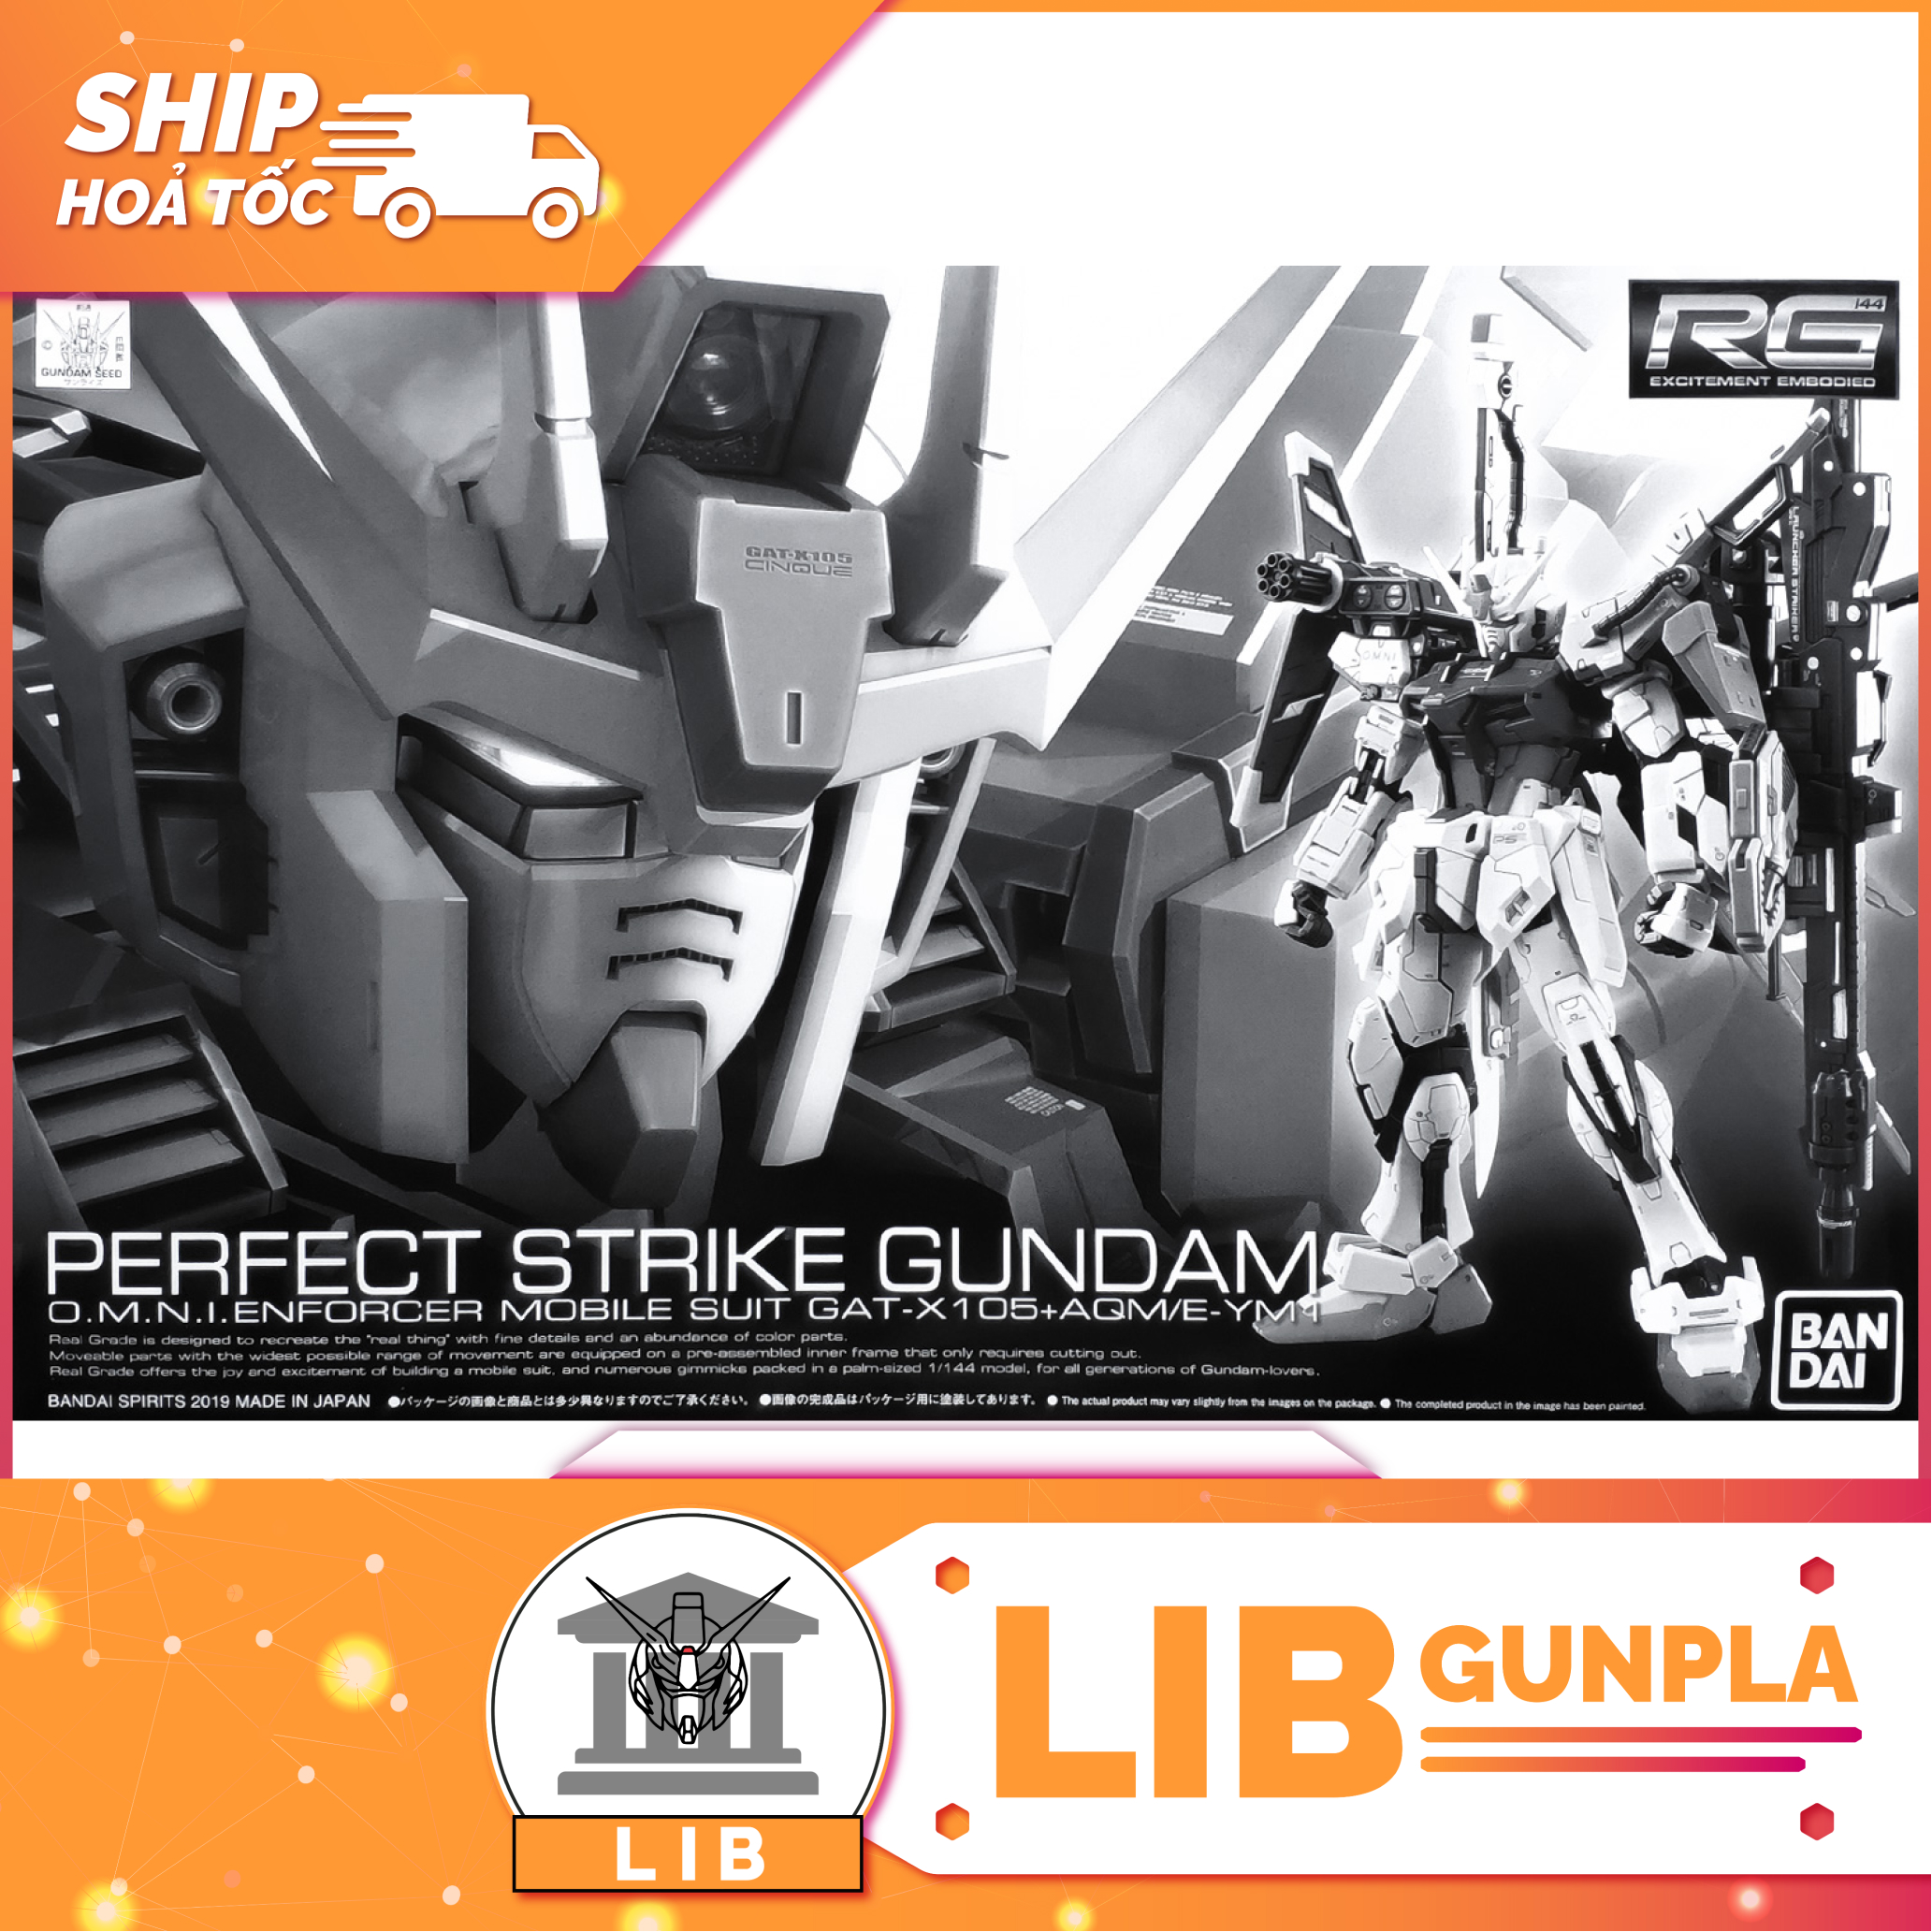 Mô hình lắp ráp Gundam RG Perfect Strike Gundam P-bandai